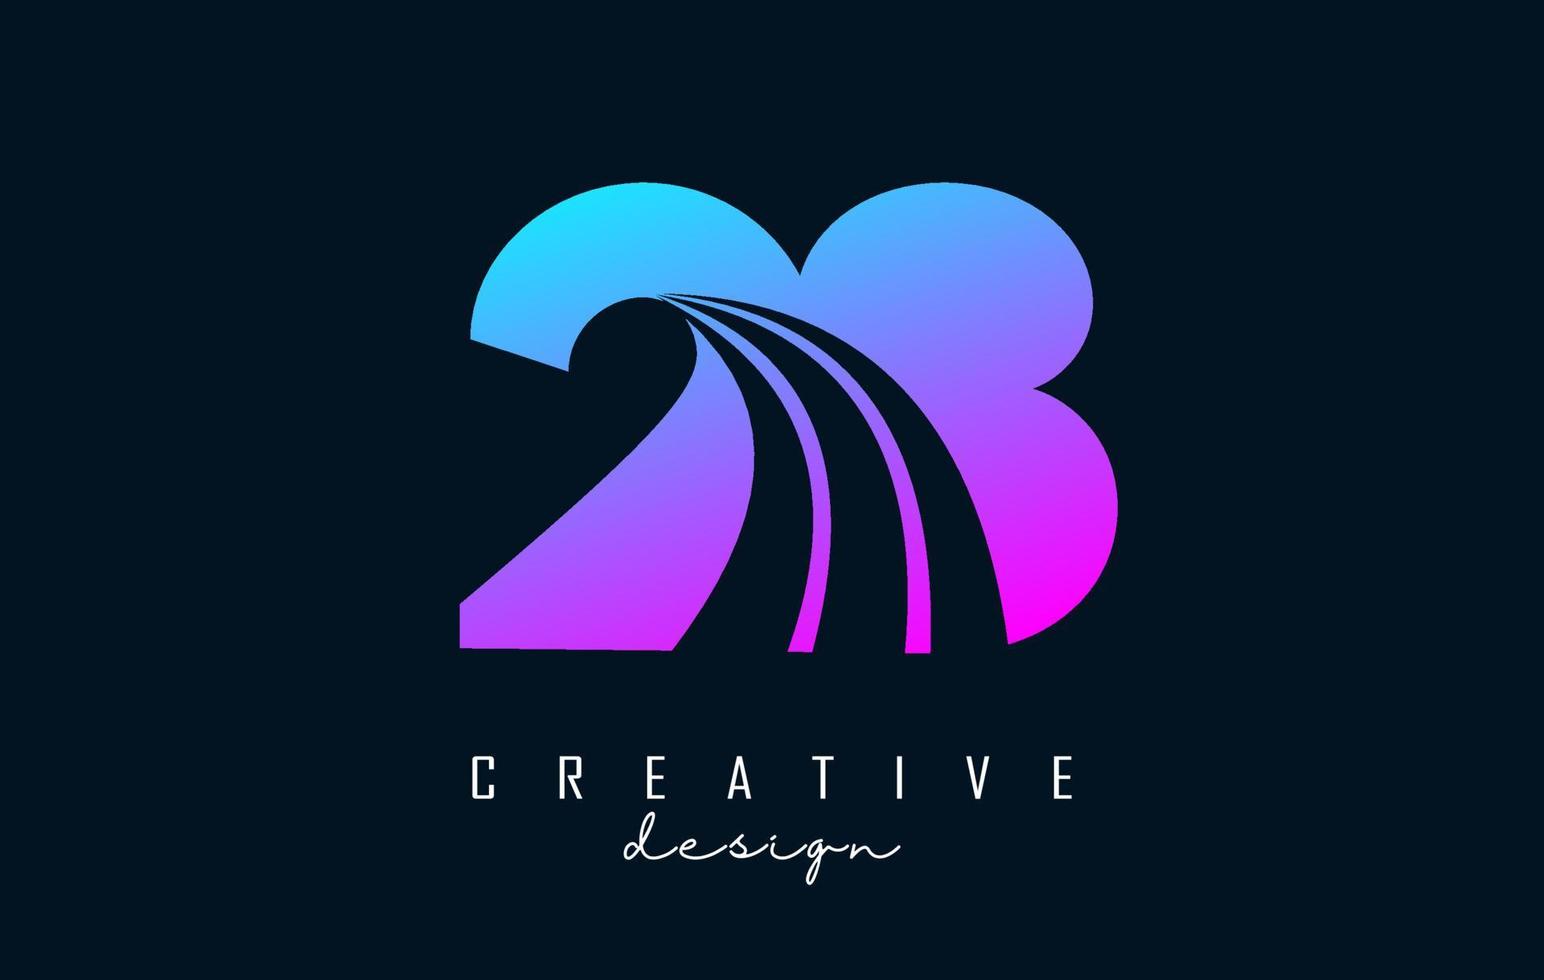 färgrik kreativ siffra 28 2 8 logotyp med ledande rader och väg begrepp design. siffra med geometrisk design. vektor